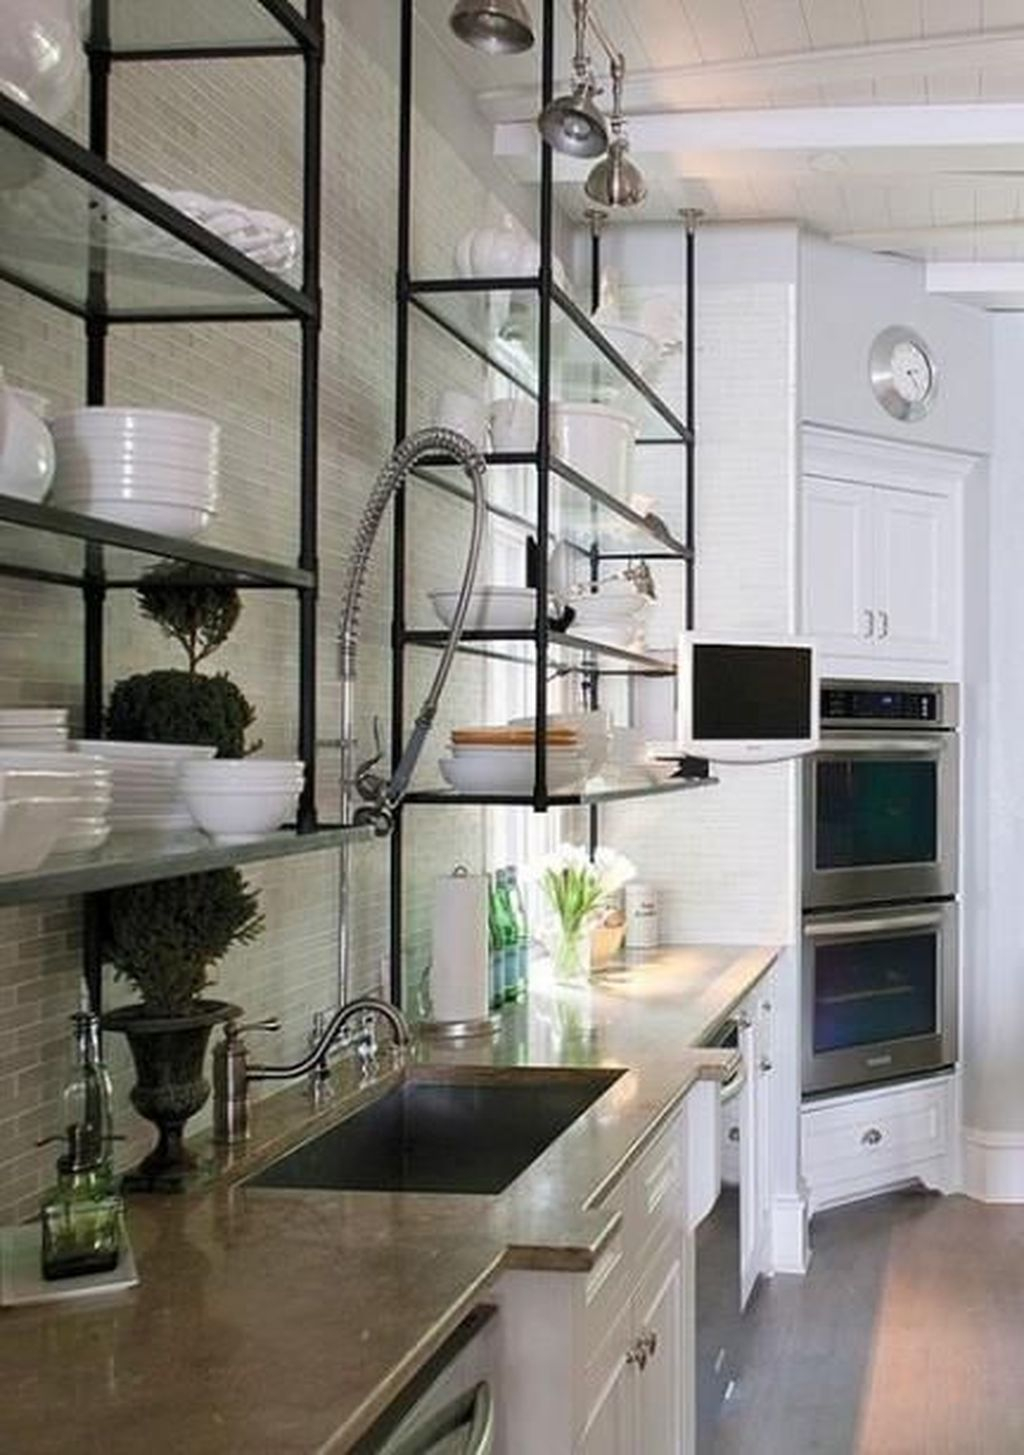 Wonderful Industrial Kitchen Shelf Design Ideas To Organize Your Kitchen26